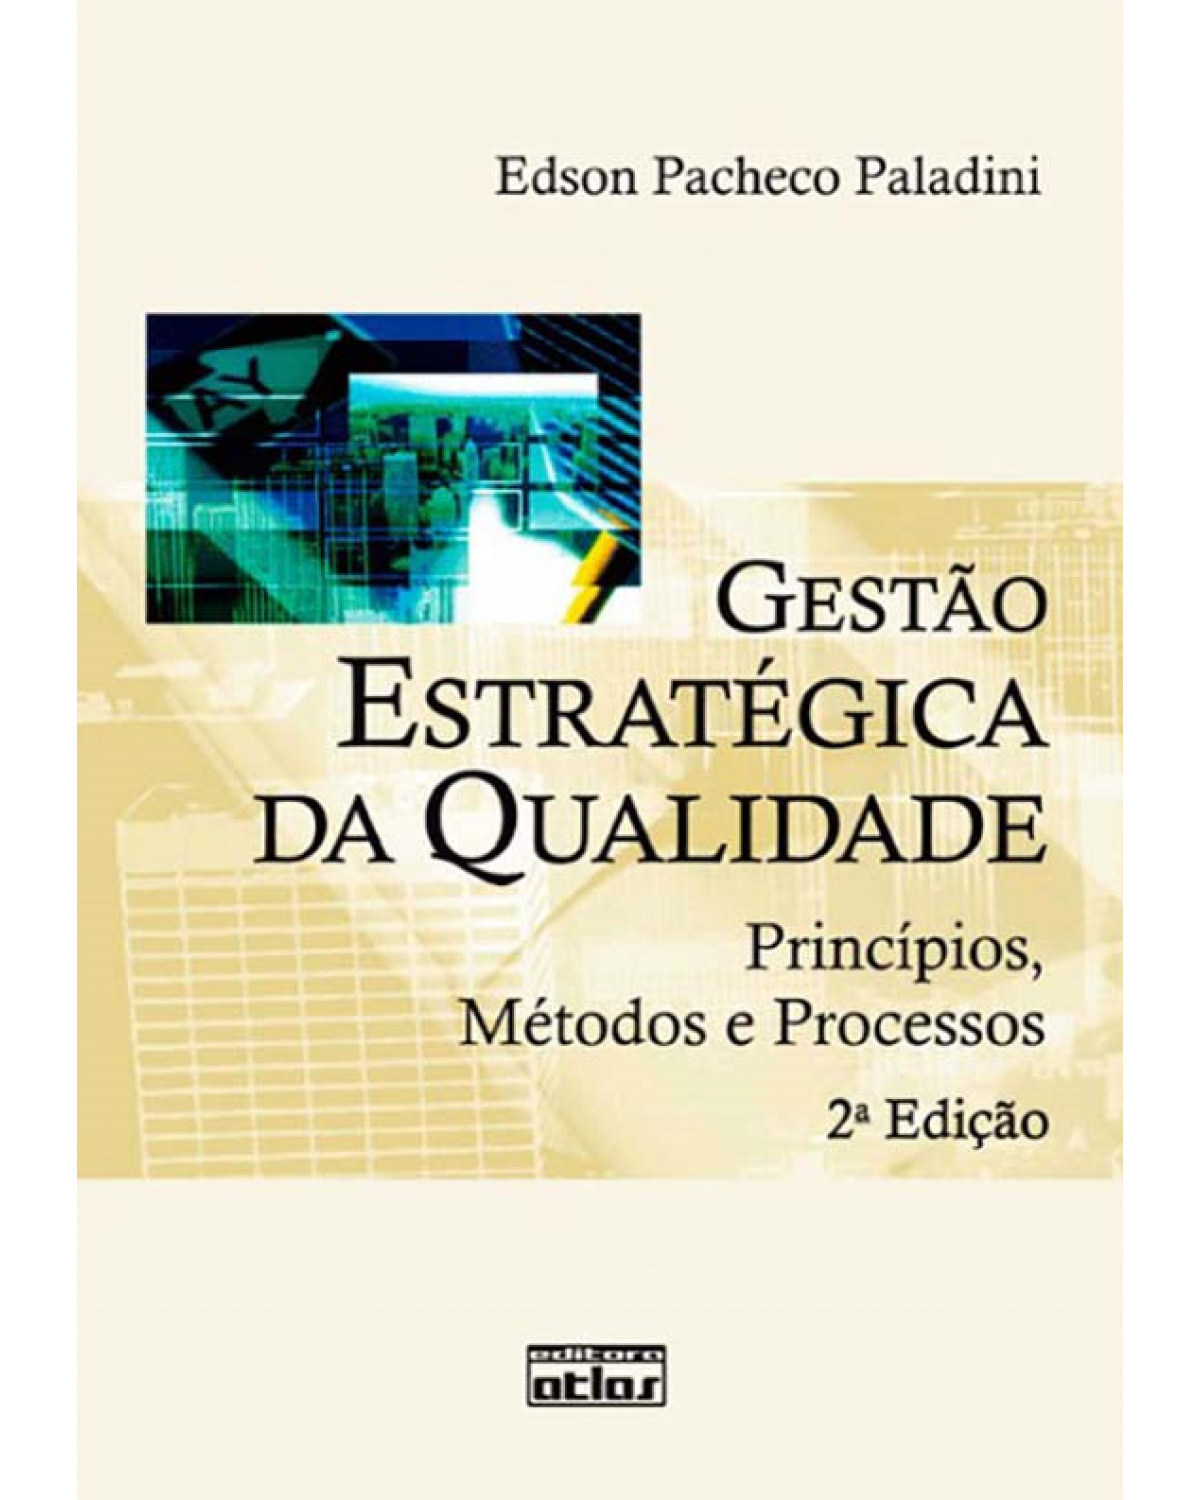 Gestão estratégica da qualidade - Princípios, métodos e processos - 2ª Edição | 2009